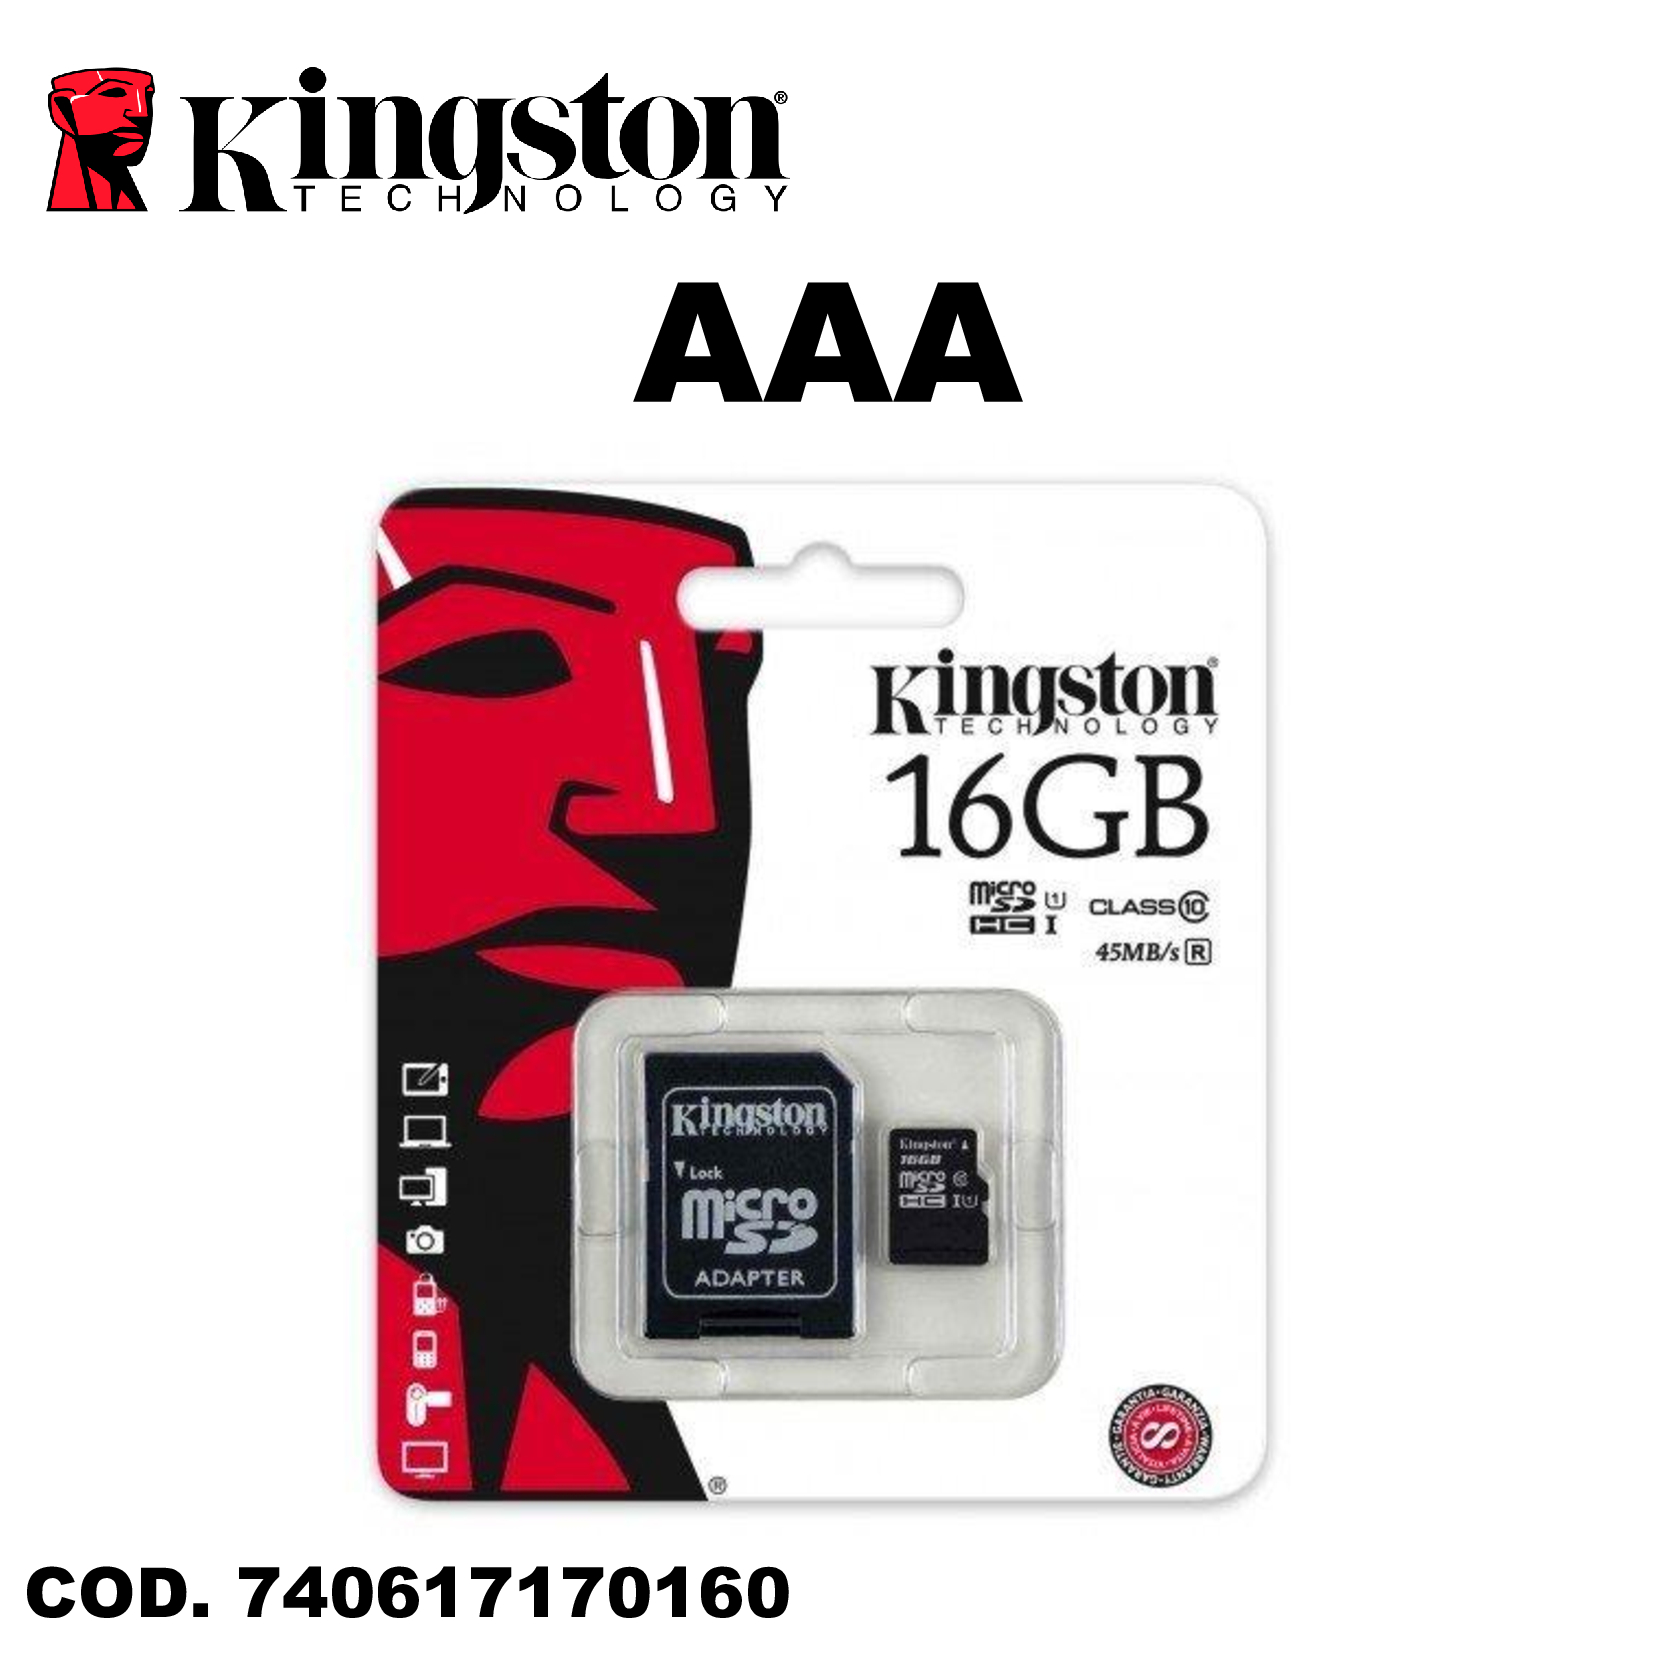 regional Menos que Increíble Micro SD 16GB Kingston Calidad AAA - Celulares Ecuador